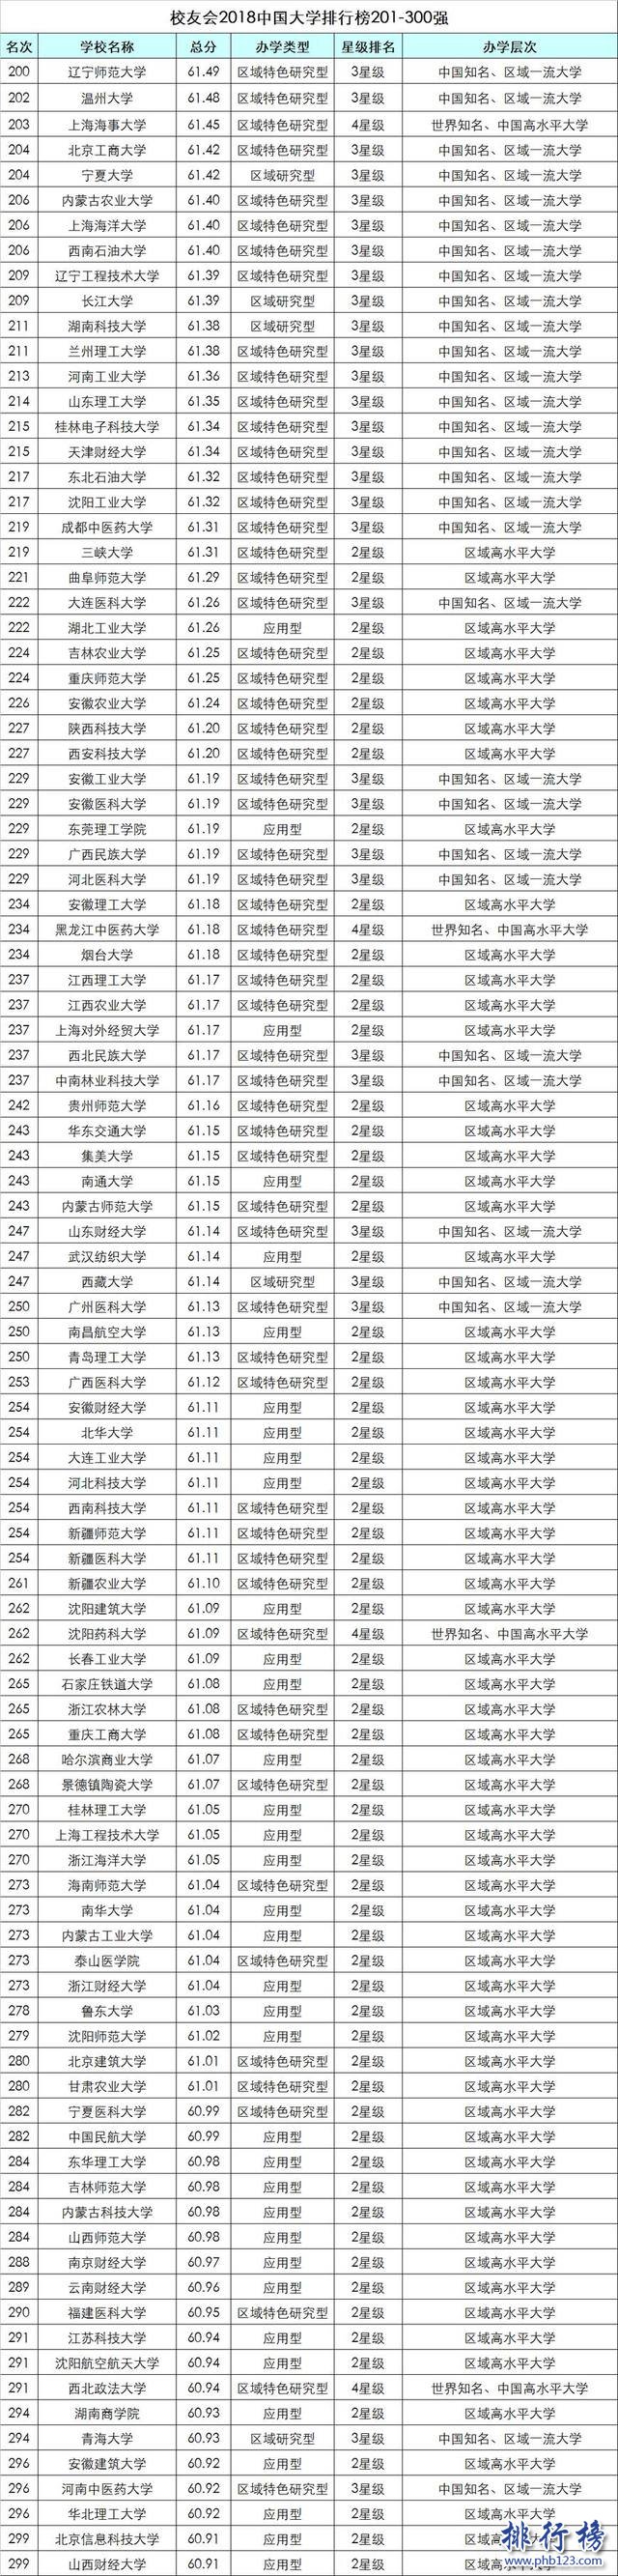 校友會2018中國大學排行榜:北大力壓清華登頂,浙大第3(附完整榜單)